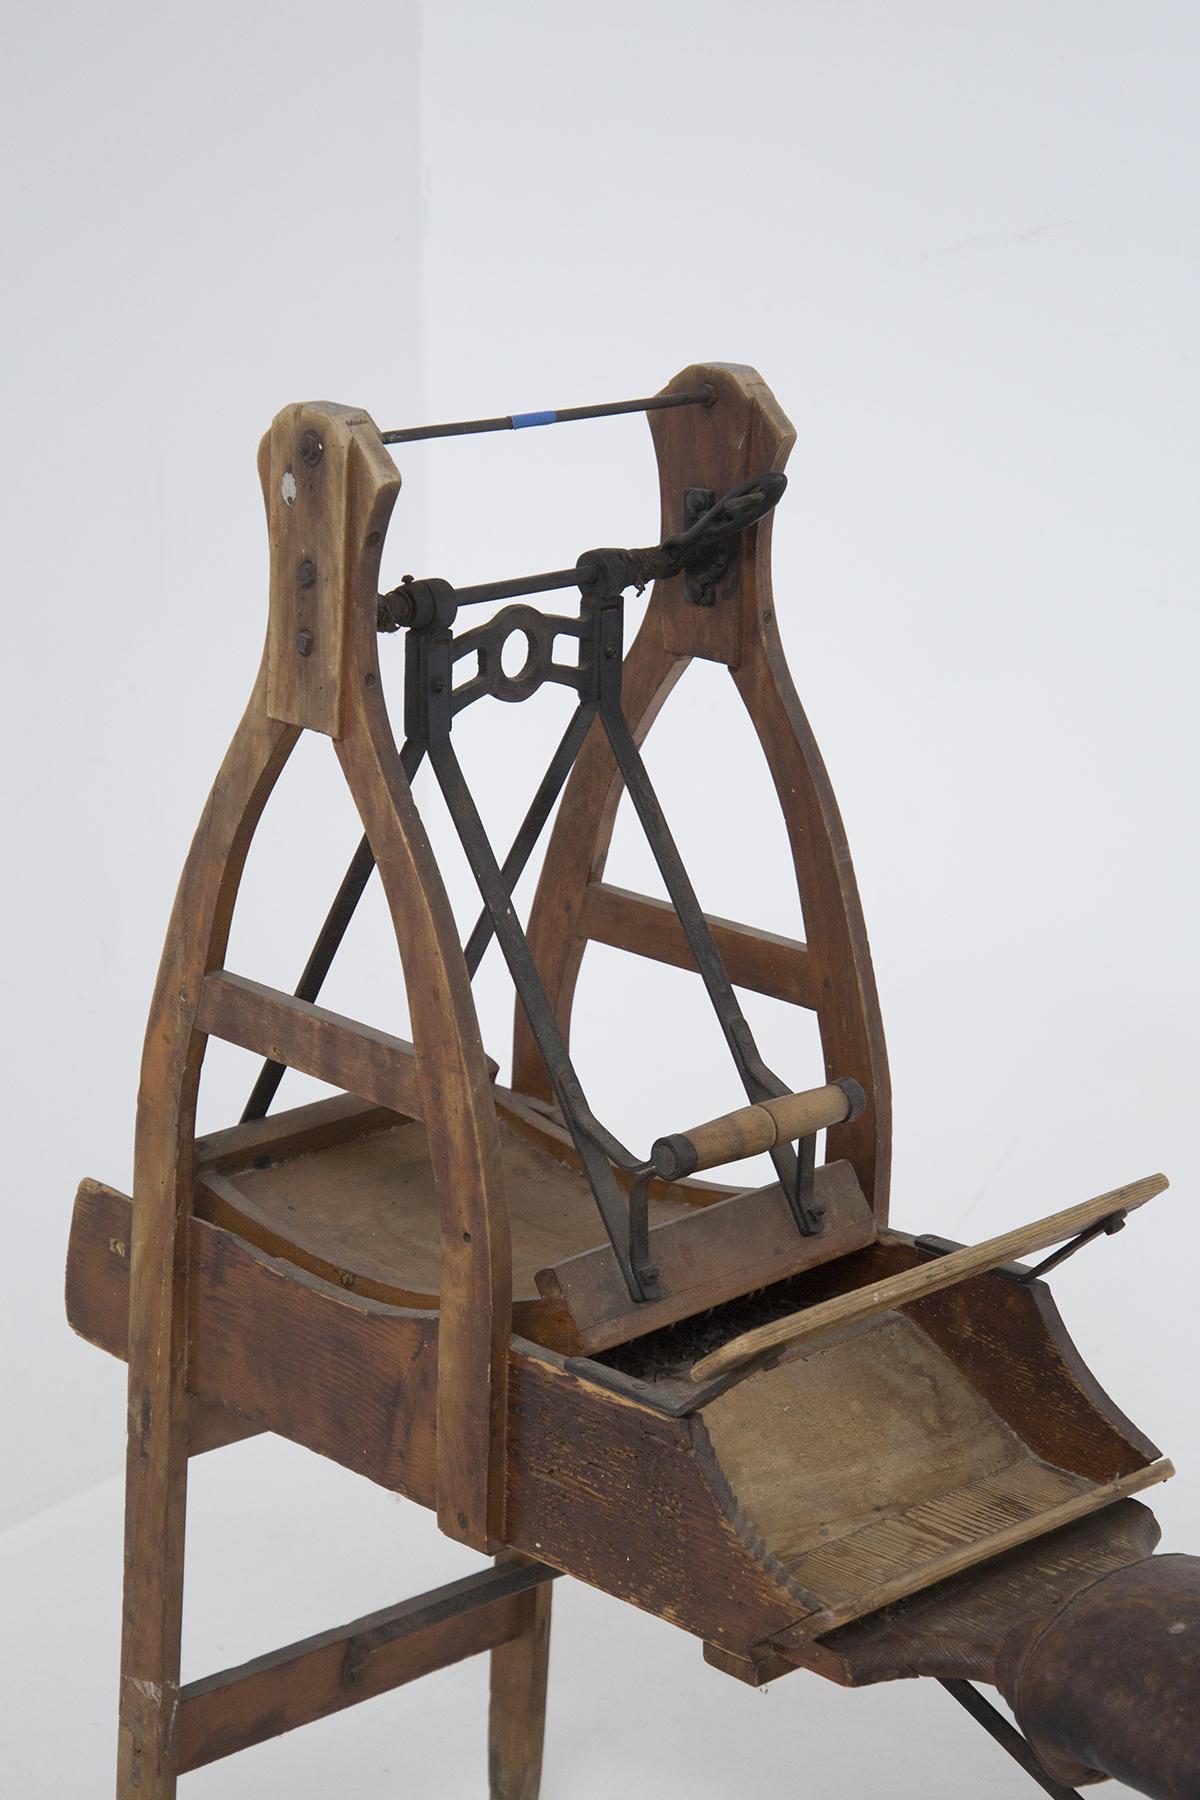 Antike Maschine zur Bearbeitung von Wolle, ganz aus Holz, aus dem Anfang des Jahres 900, italienische Herstellung.
Die Struktur ist typisch für die Maschinen der Vergangenheit: Es gibt einen unteren Sitz vorne, der Sitz ist aus braunem, leicht